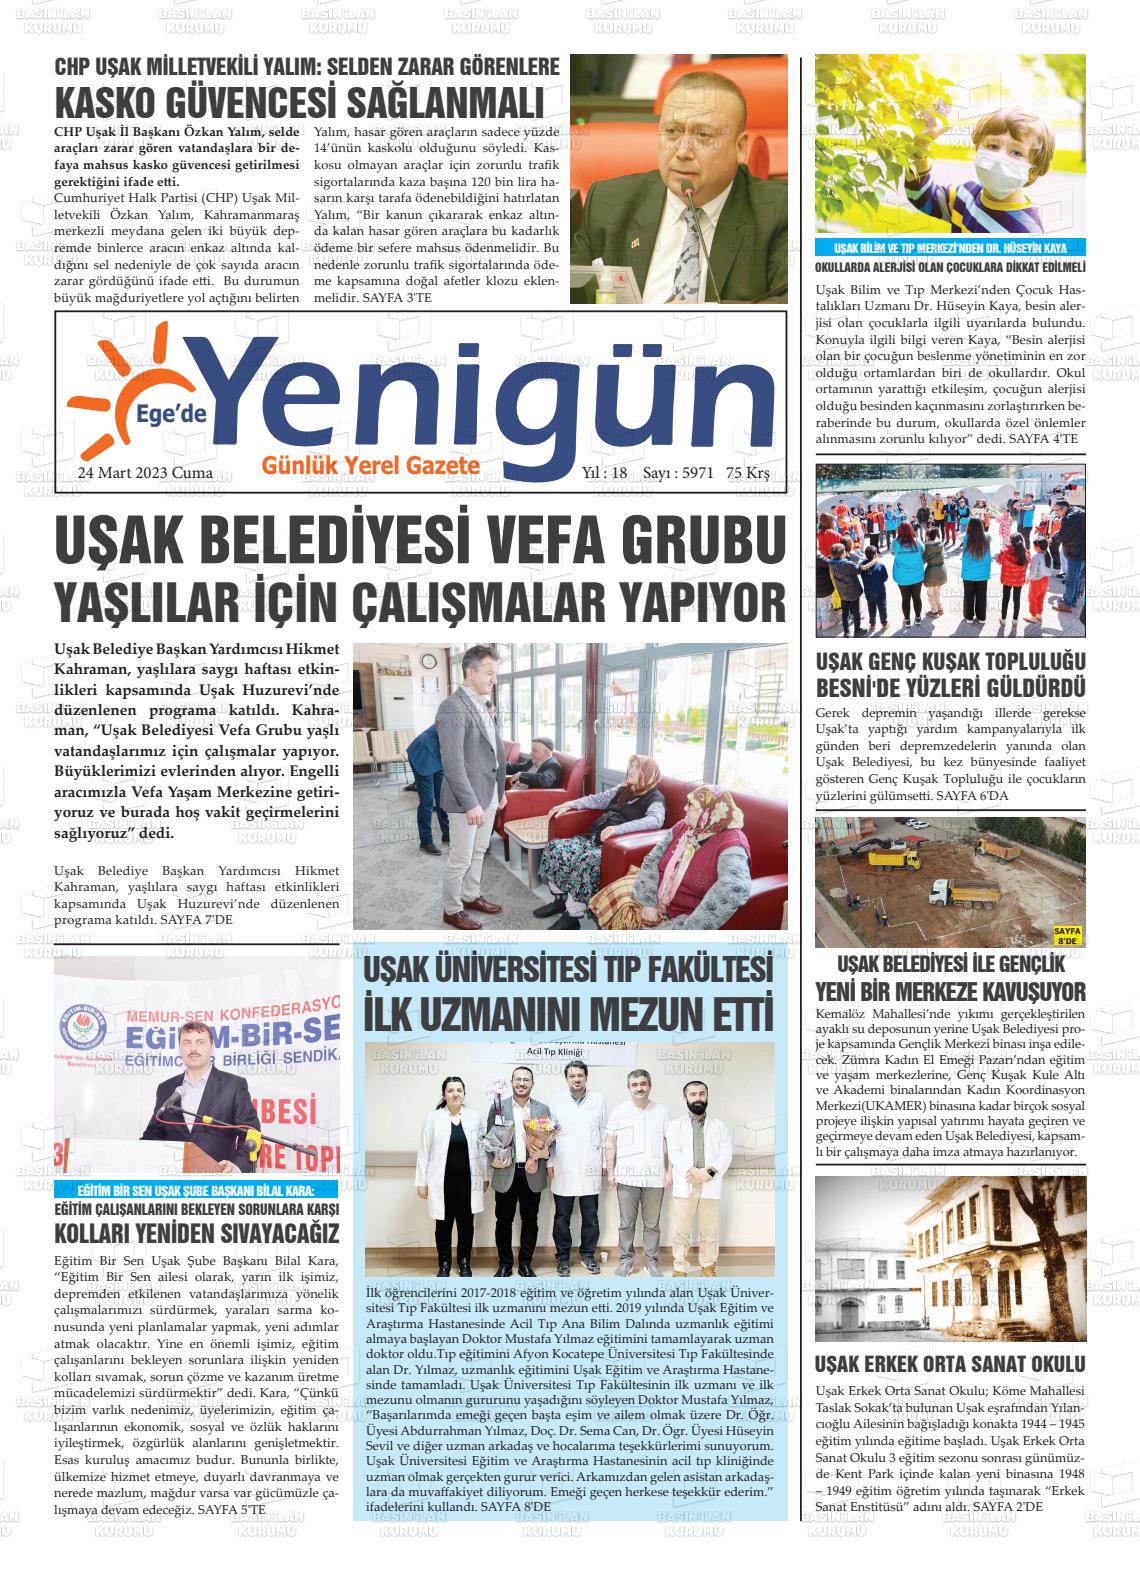 24 Mart 2023 EGE'DE YENİGÜN GAZETESİ Gazete Manşeti